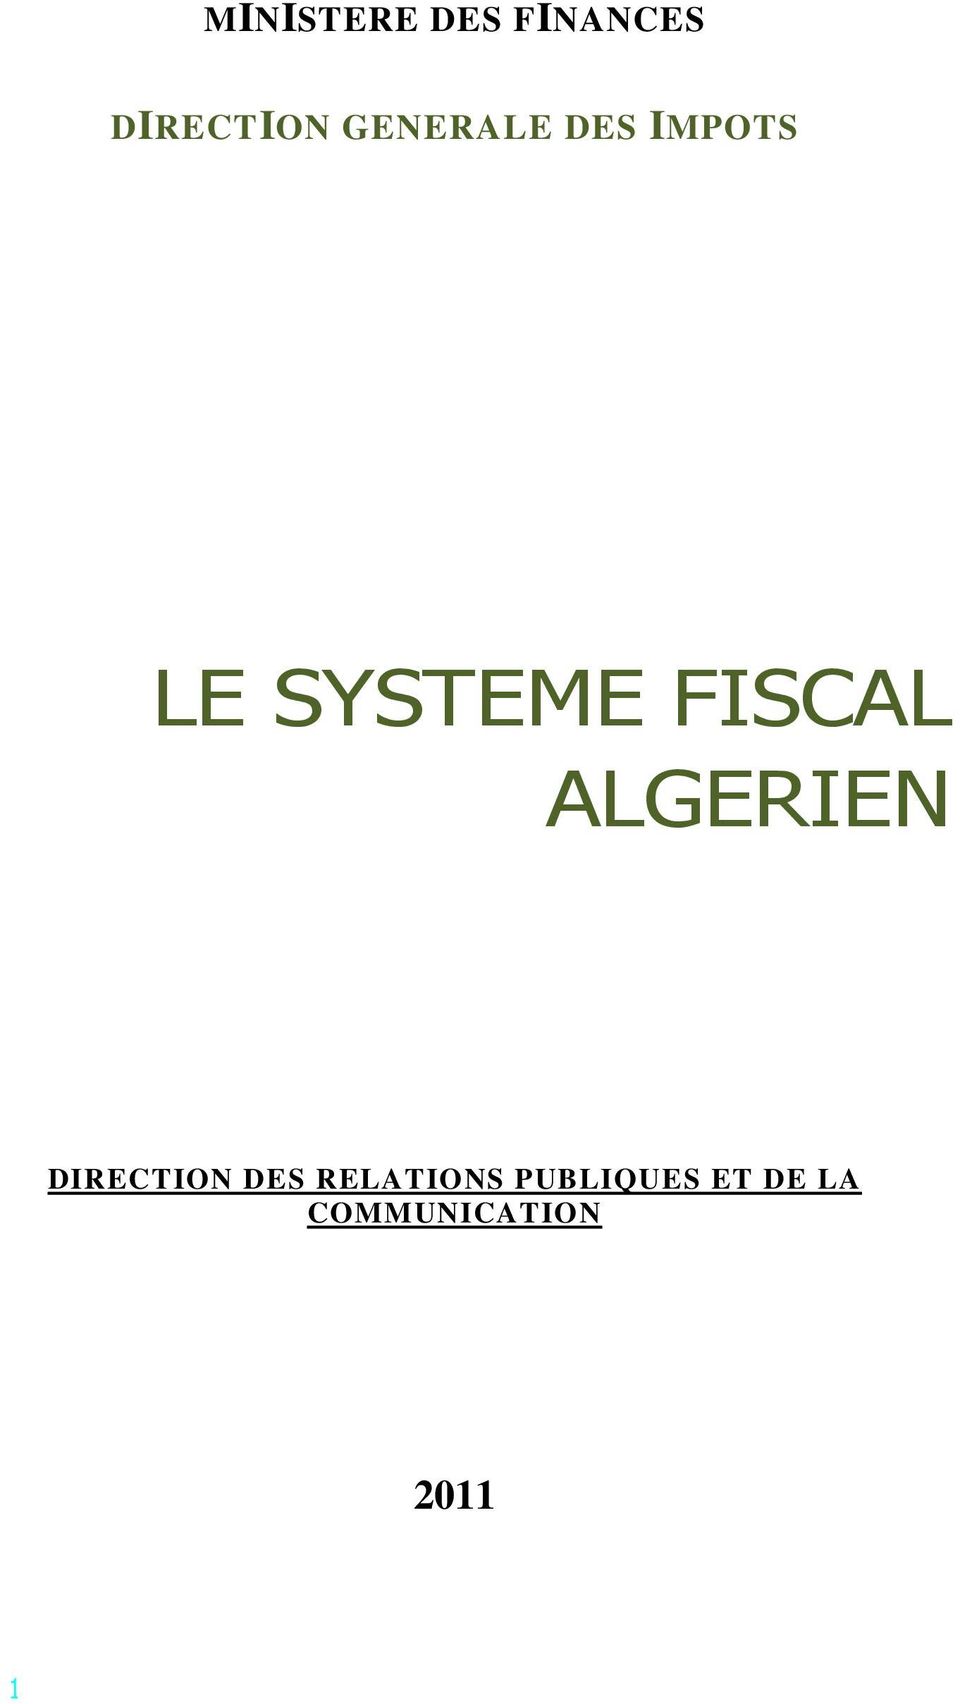 FISCAL ALGERIEN DIRECTION DES